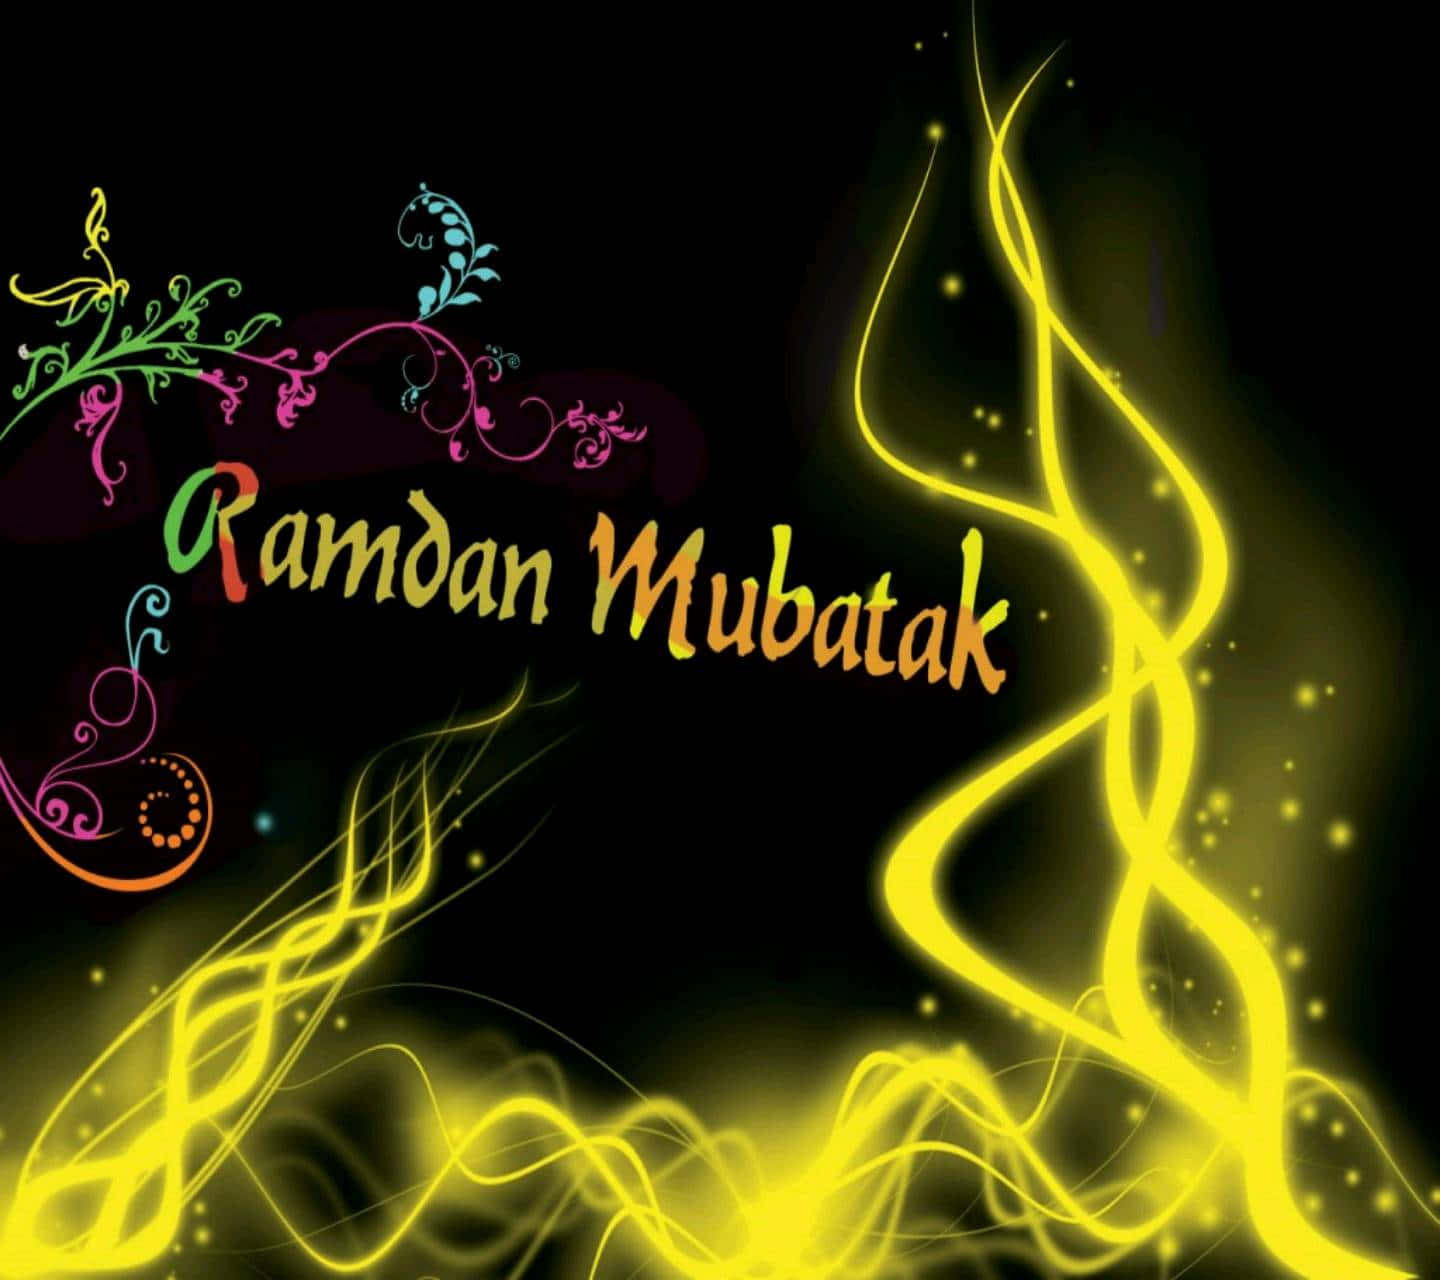 Fondode Pantalla De Ramadan Mubarak